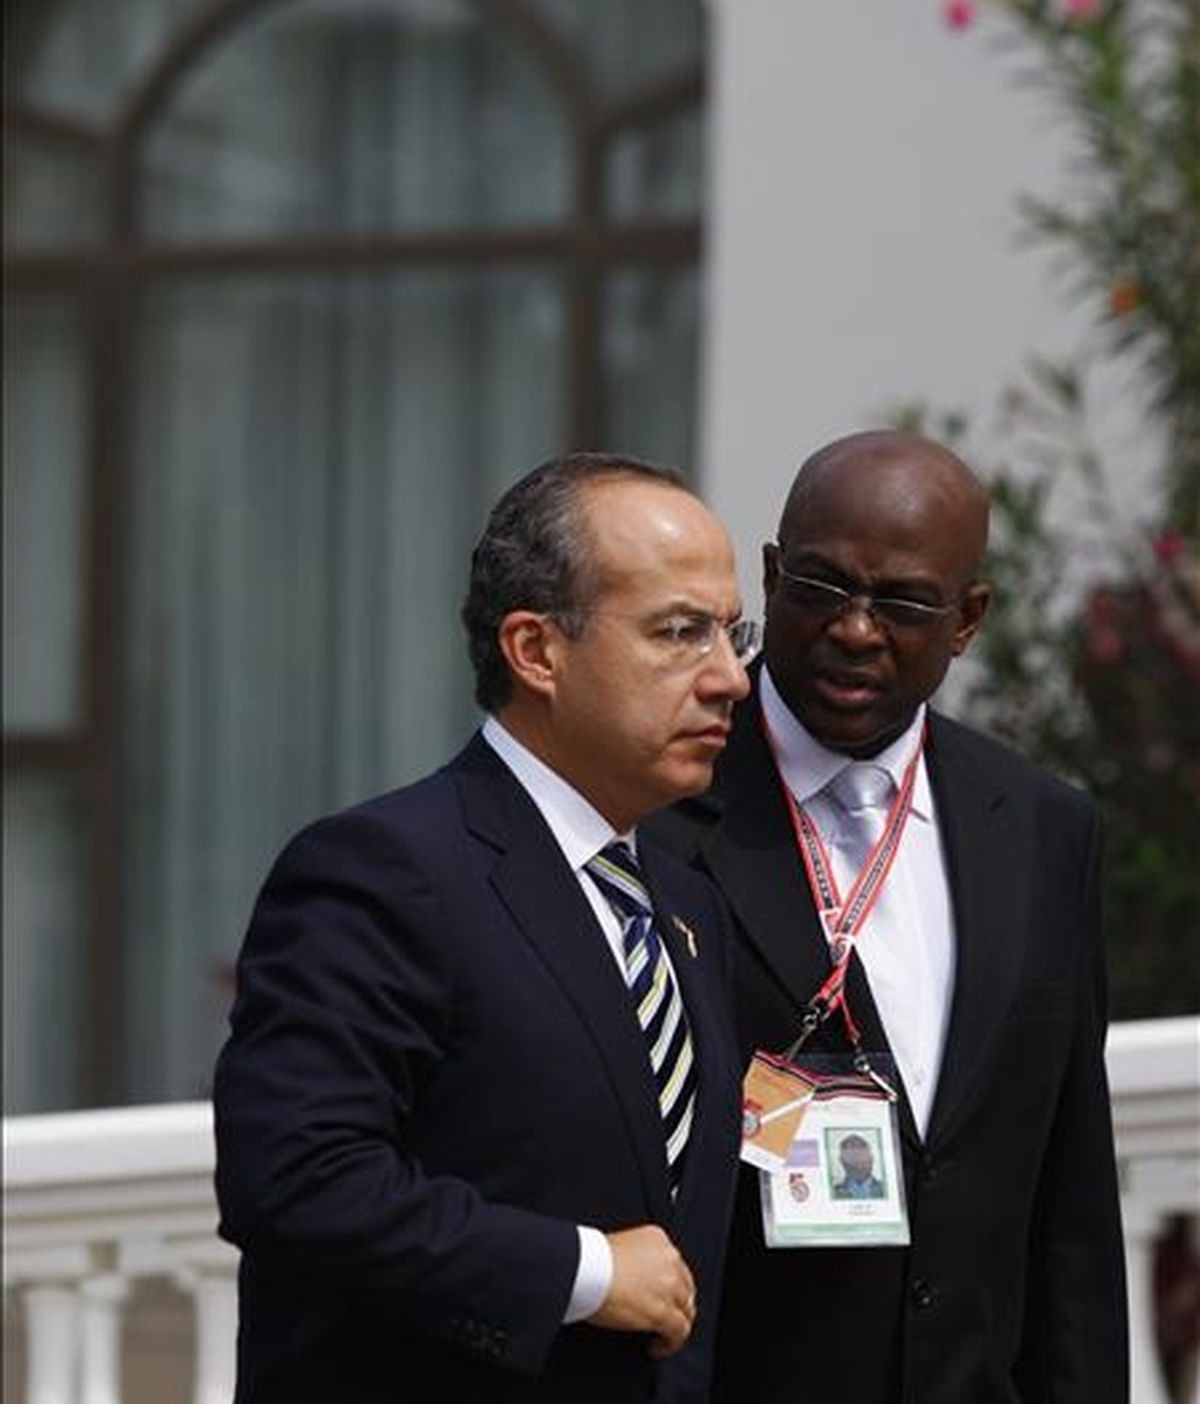 El presidente de México, Felipe Calderón, a su llegada, este 19 de abril, a la residencia del primer ministro de Trinidad y Tobago, Patrick Manning, poco antes de la ceremonia de clausura de la V Cumbre de las Americas. EFE